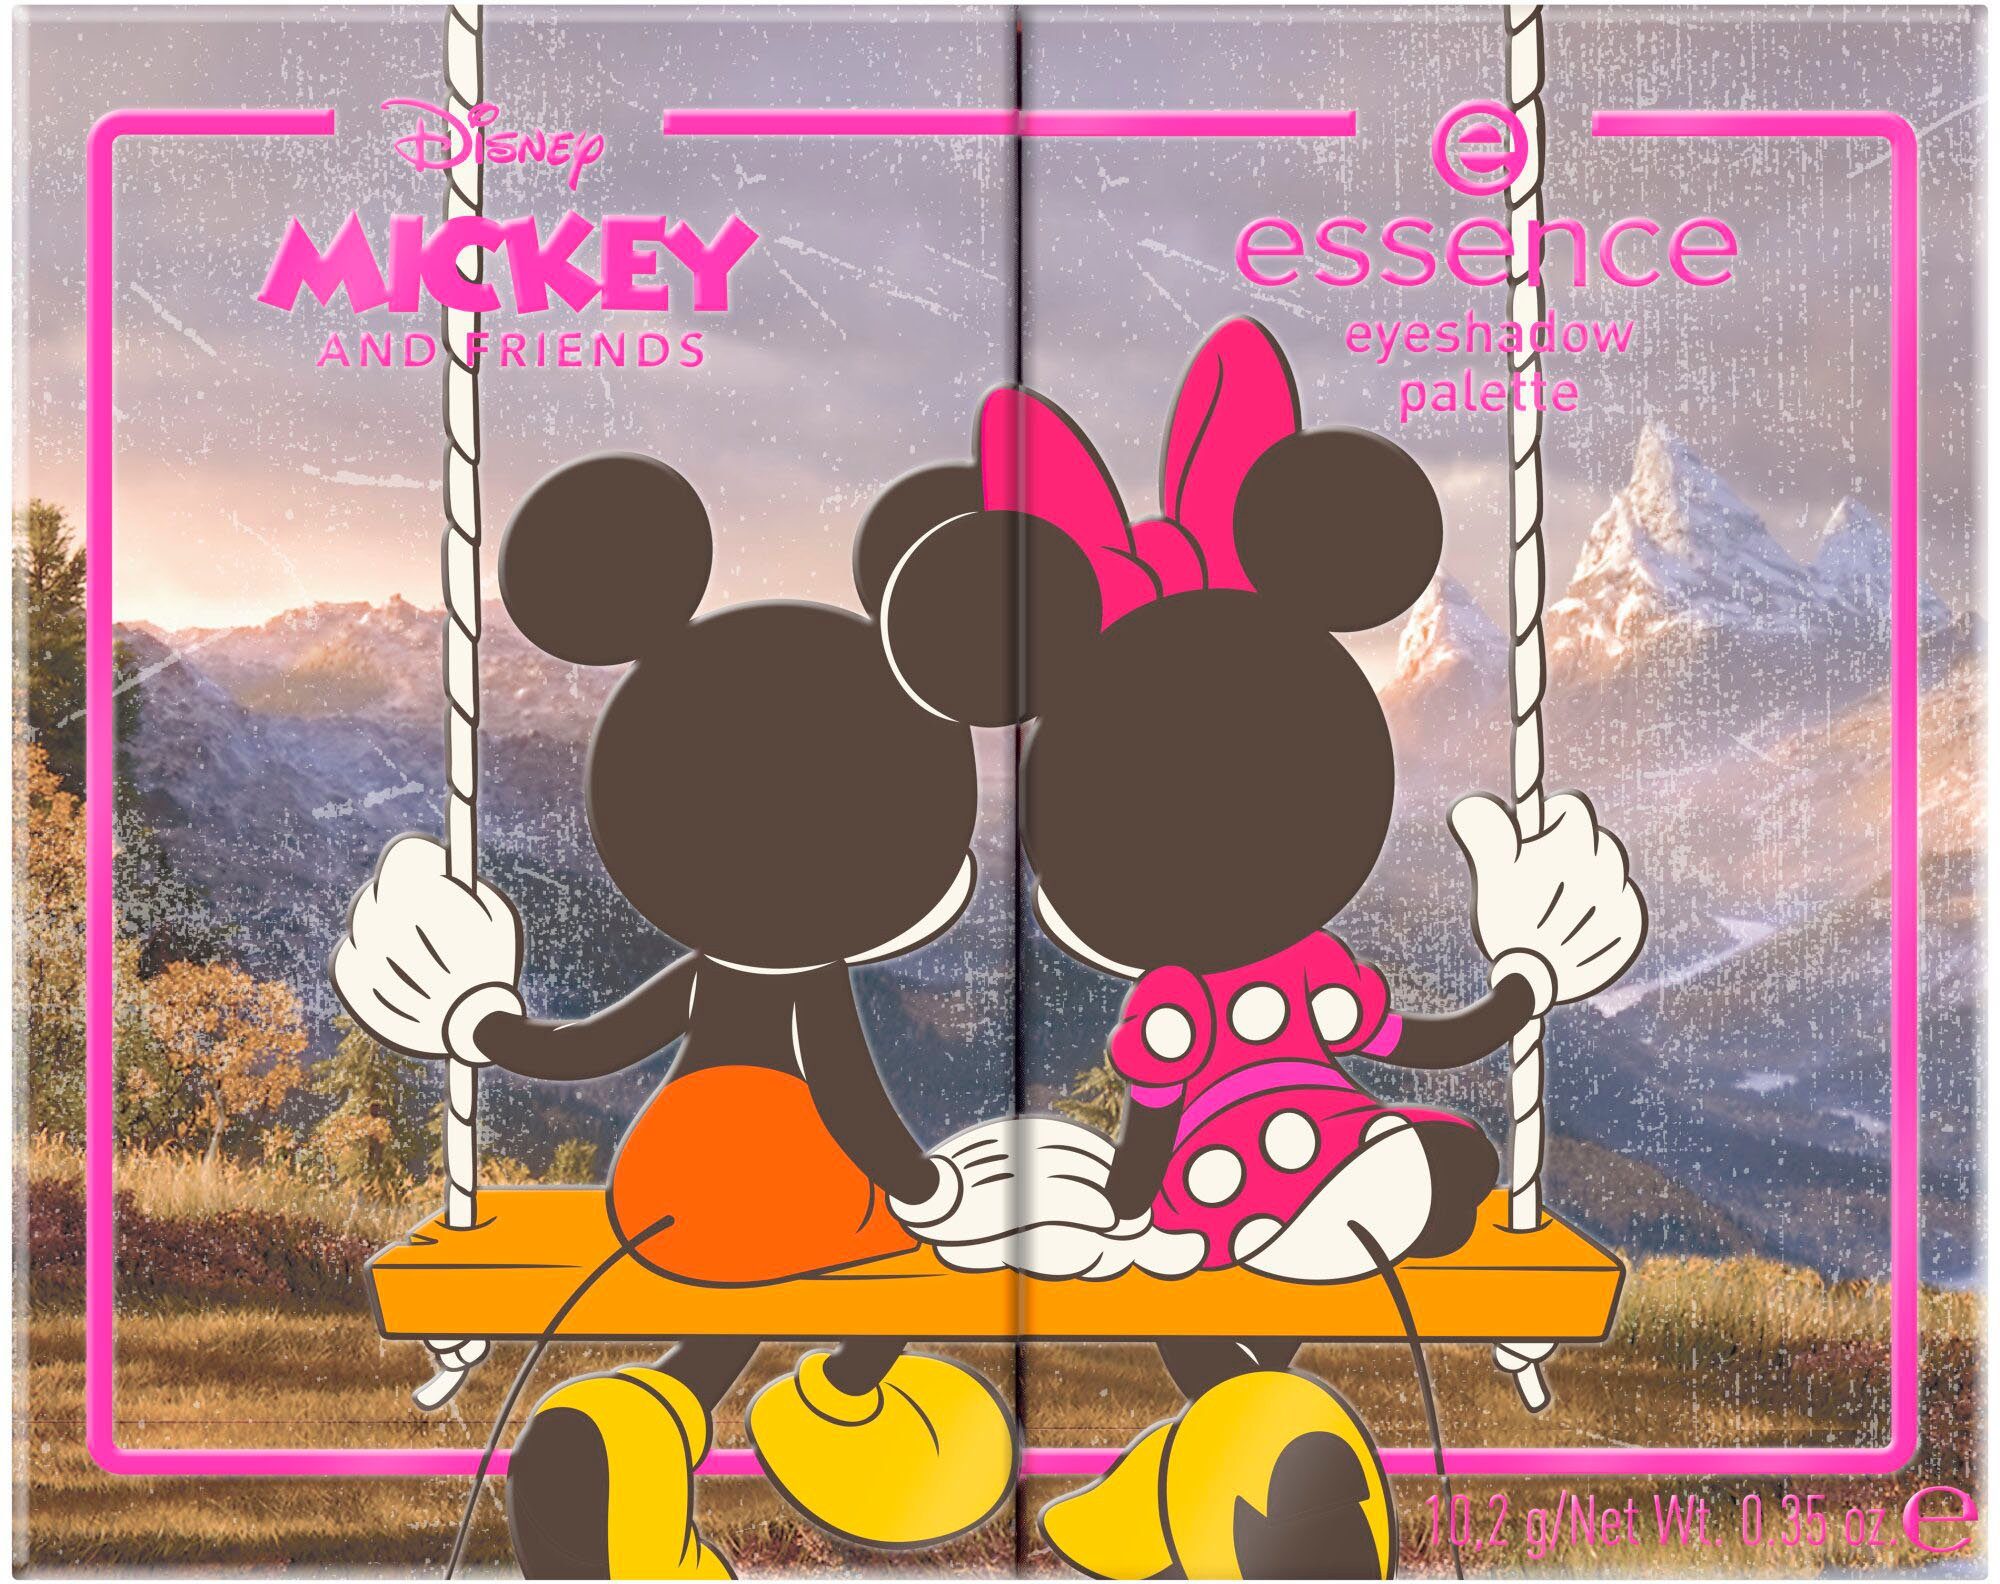 Essence Lidschatten-Palette Disney Mickey and palette, Looks abwechslungsreiche eyeshadow Augen-Make-Up Friends für